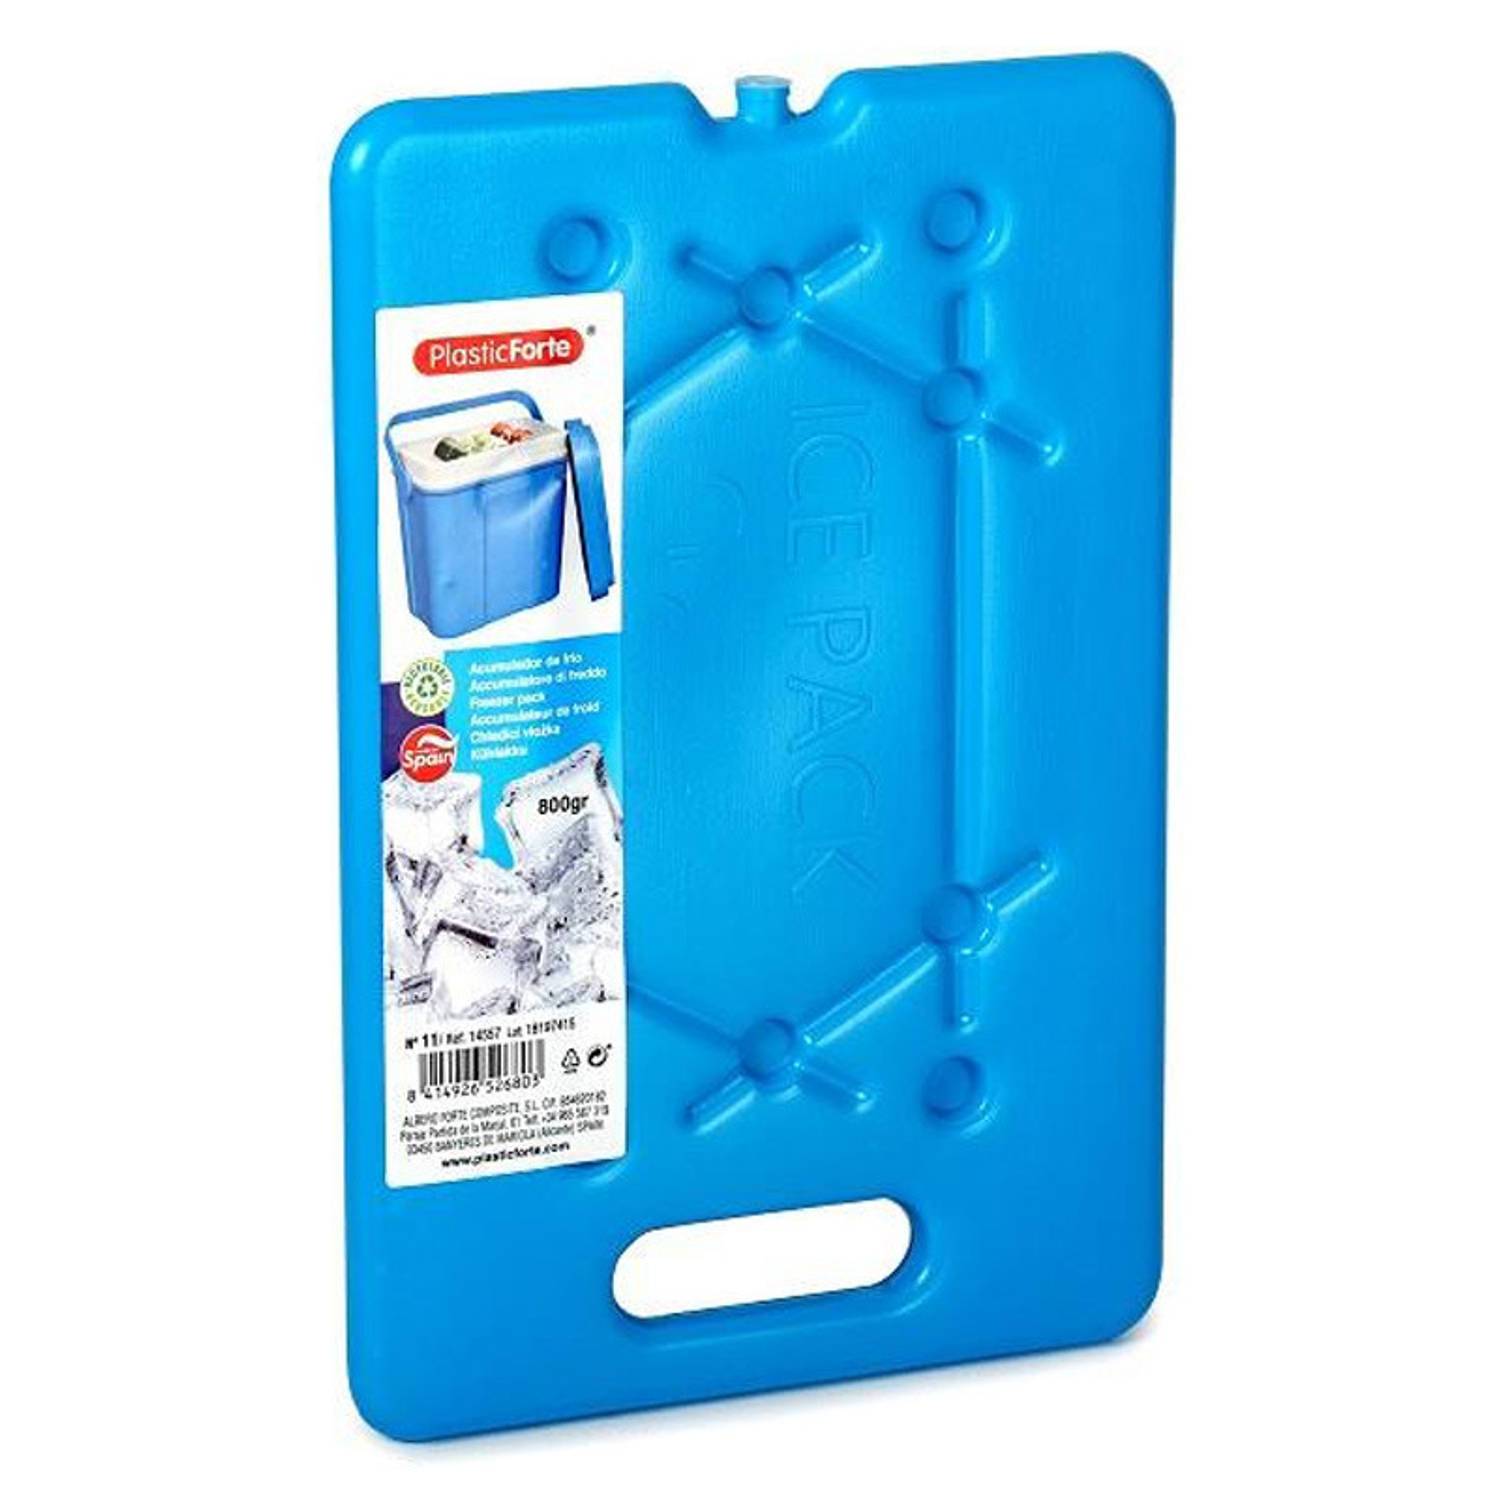 Plasticforte Koelelementen 200 gram - 11 x 16 x 1.5 cm - blauw - Voor koelbox en koeltas - Koelelementen